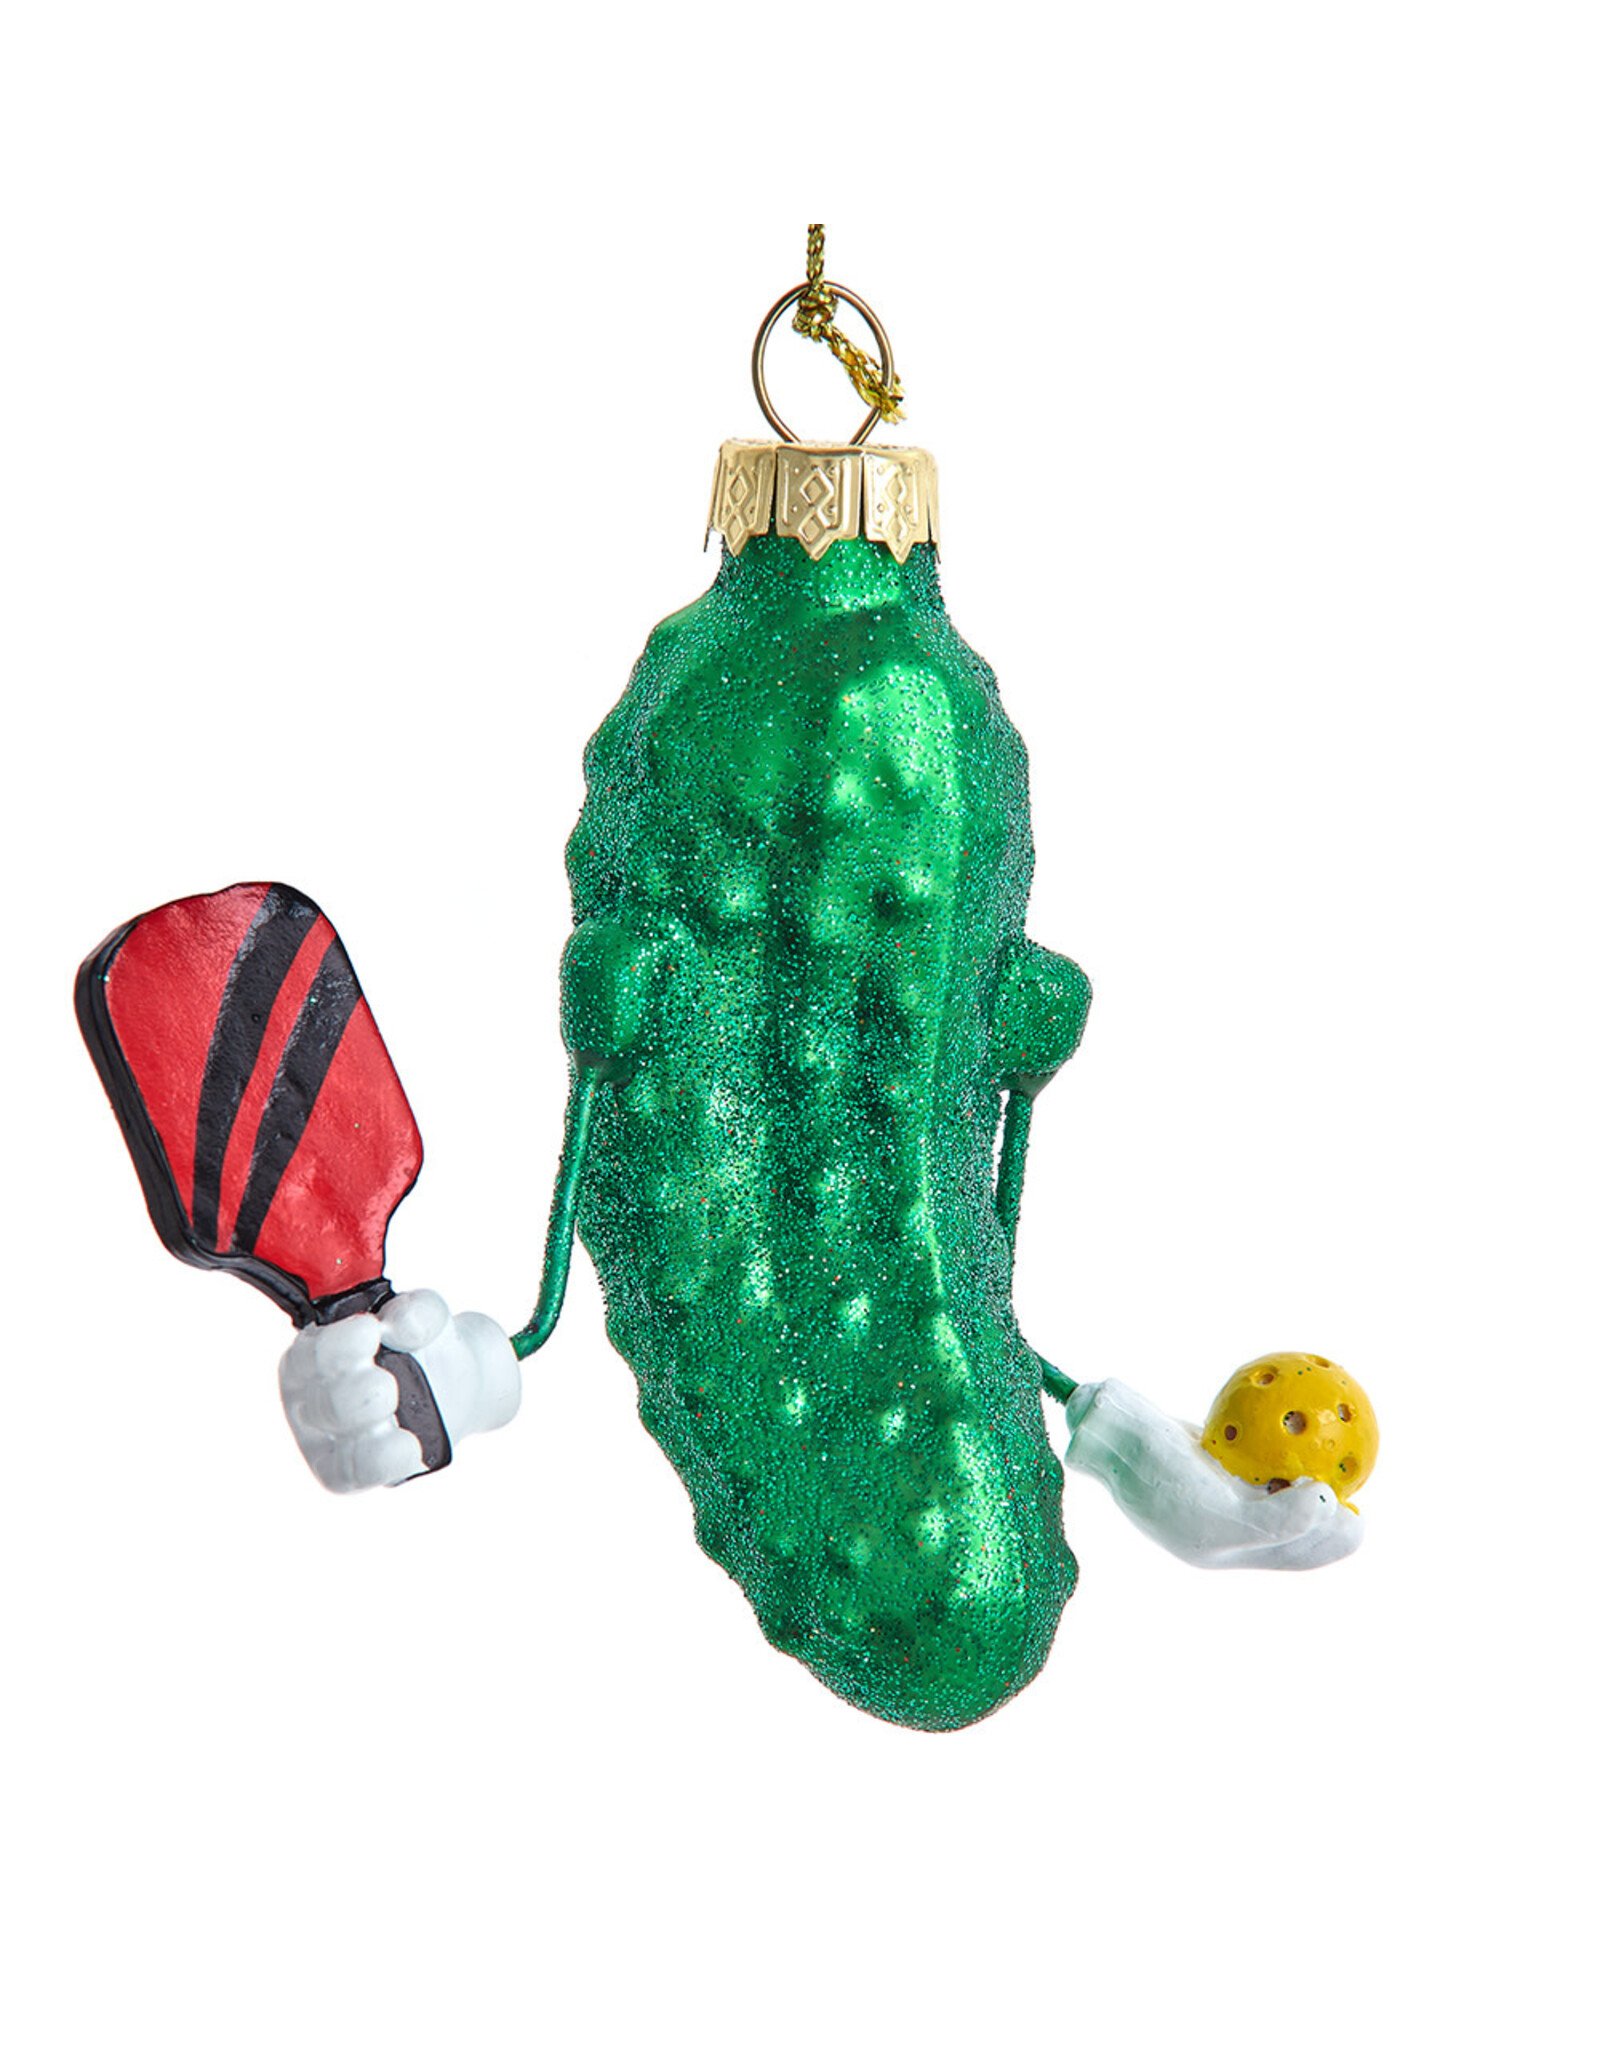 Kurt Adler Glass Pickleball Pickle Ornament 3 Inch